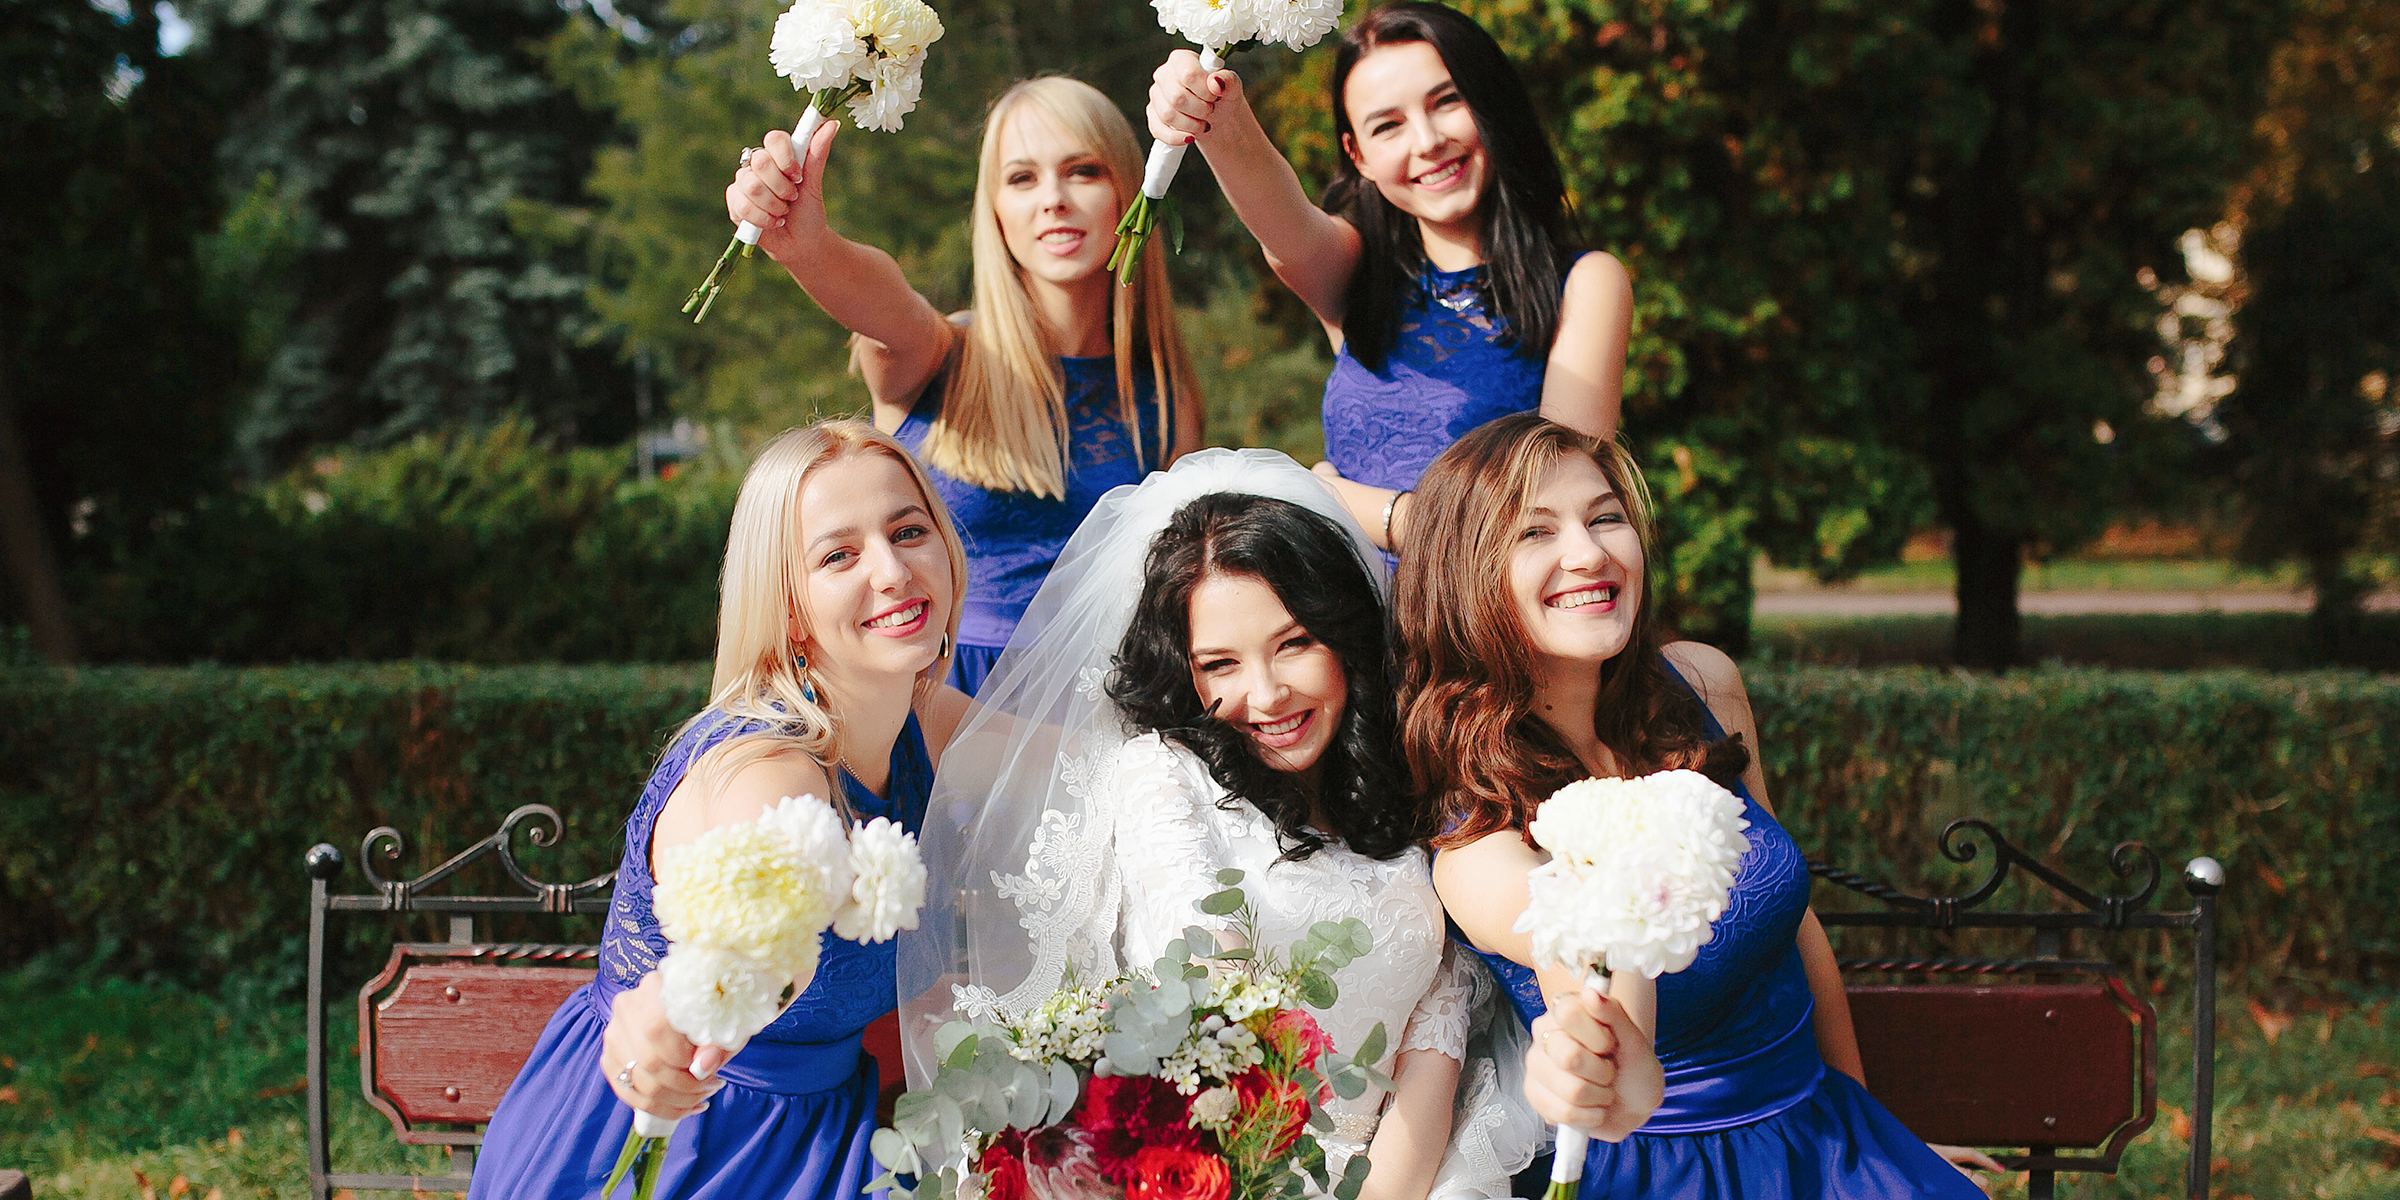 Eine glückliche Braut, umgeben von ihren Brautjungfern | Quelle: Freepik